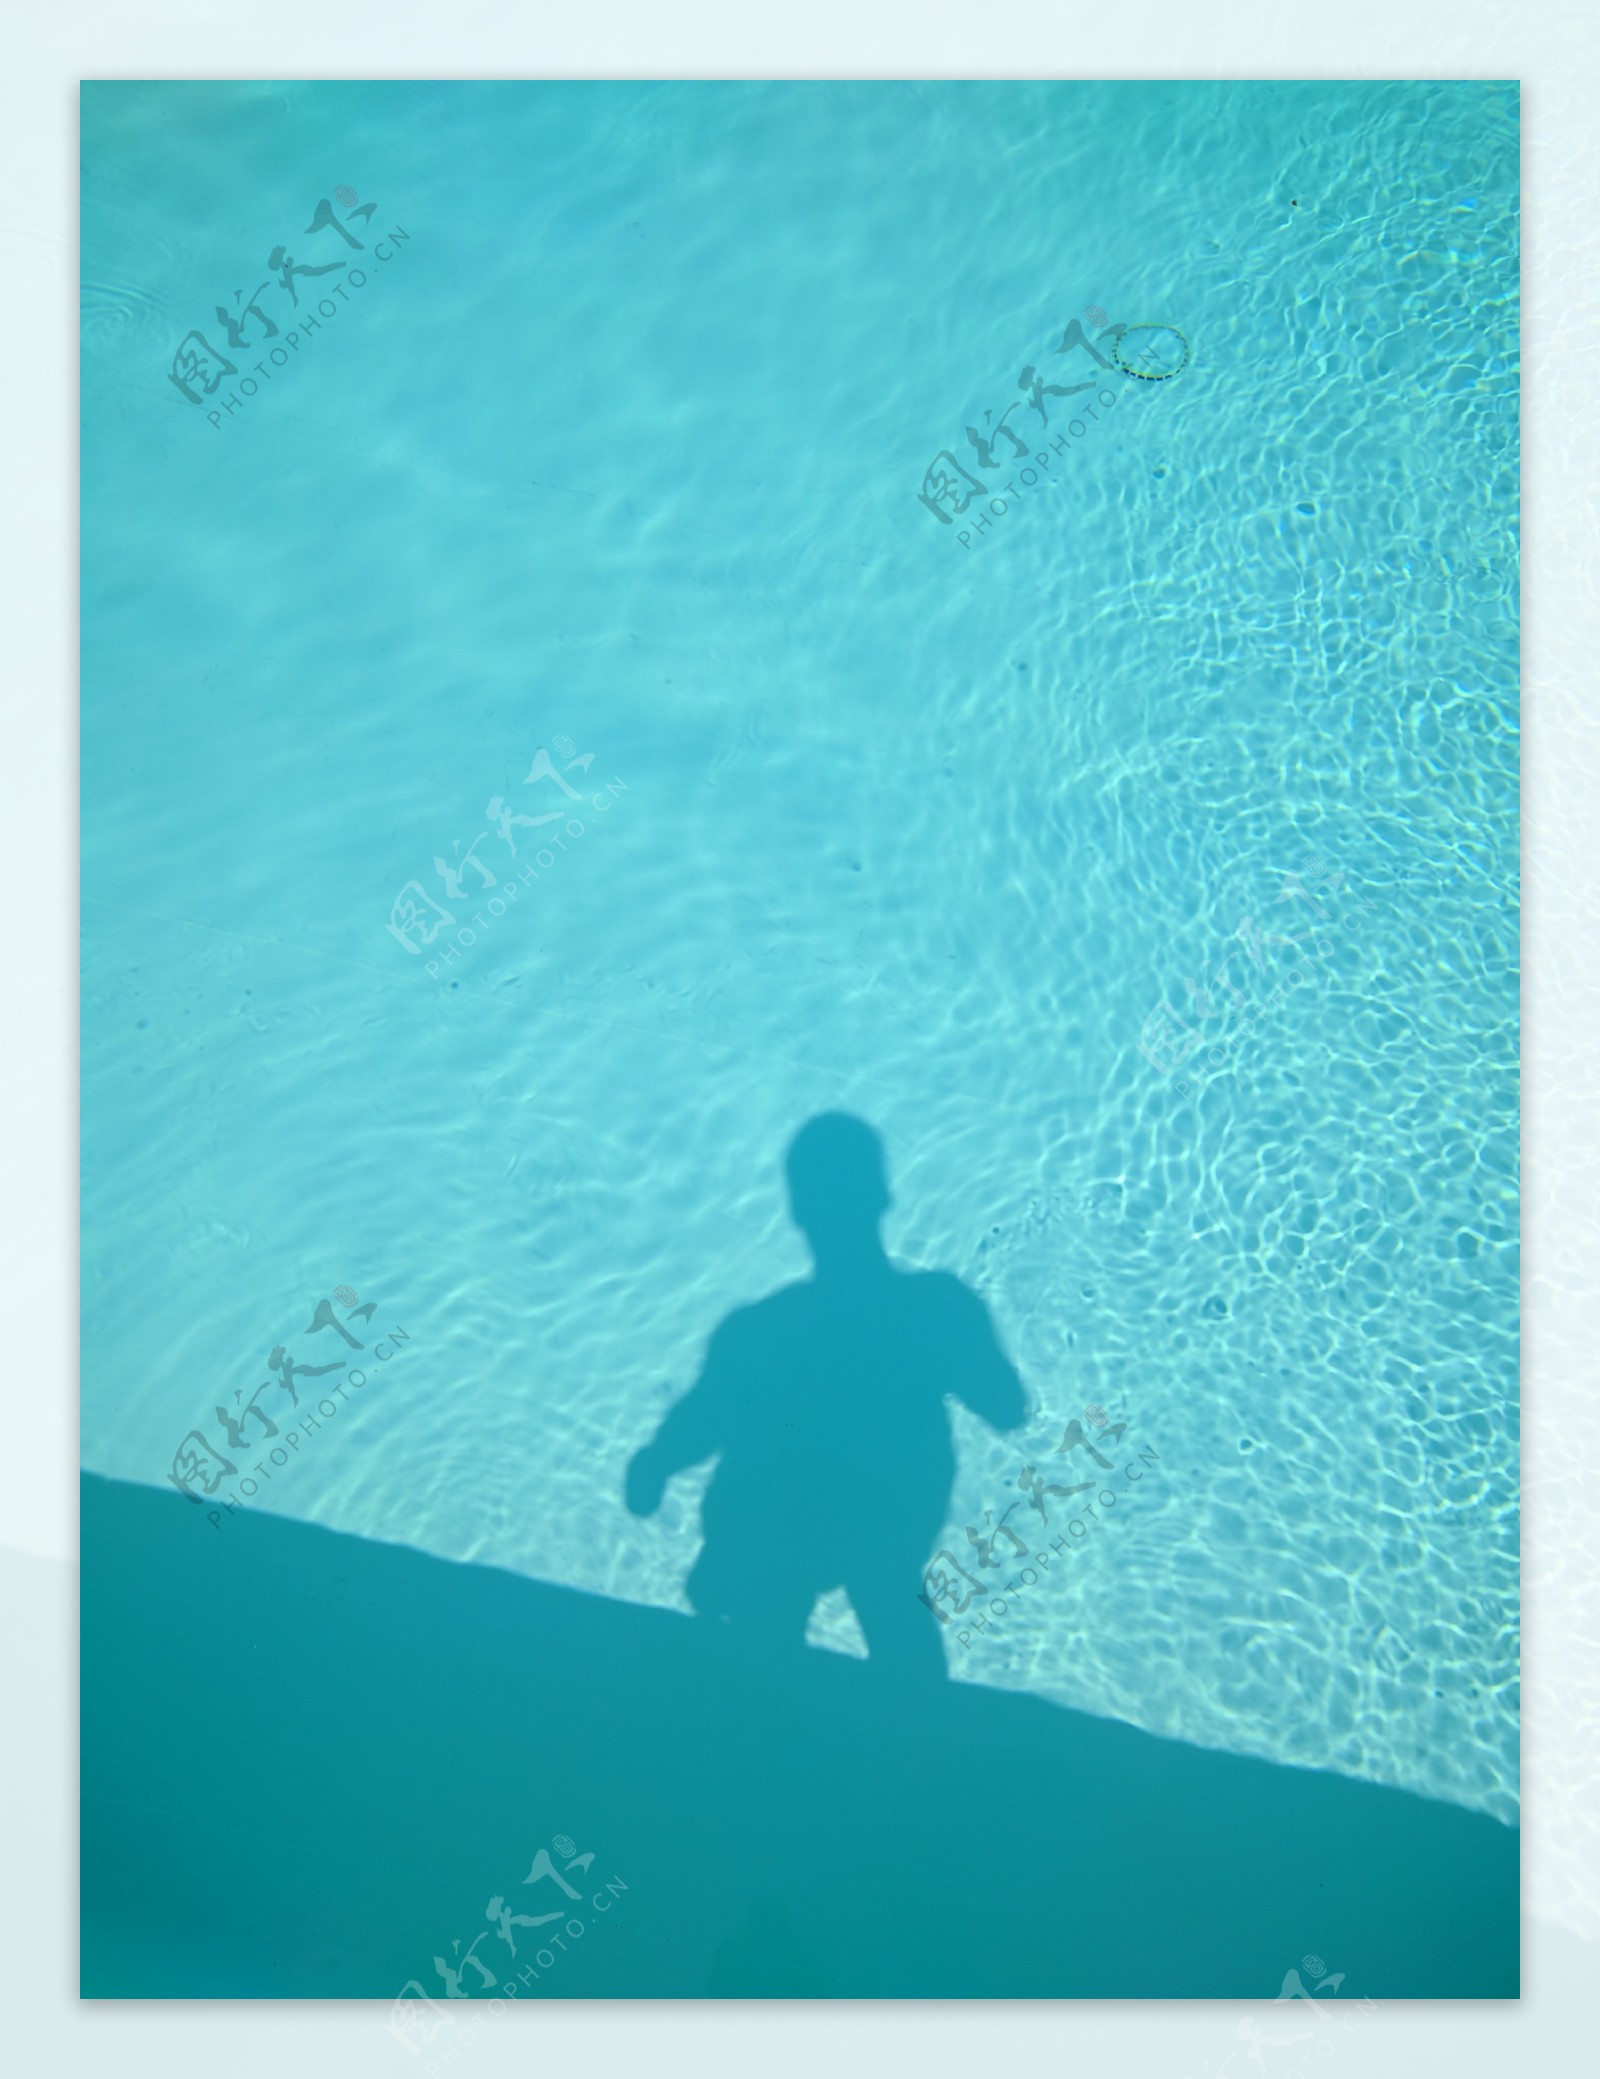 蓝色泳池人影